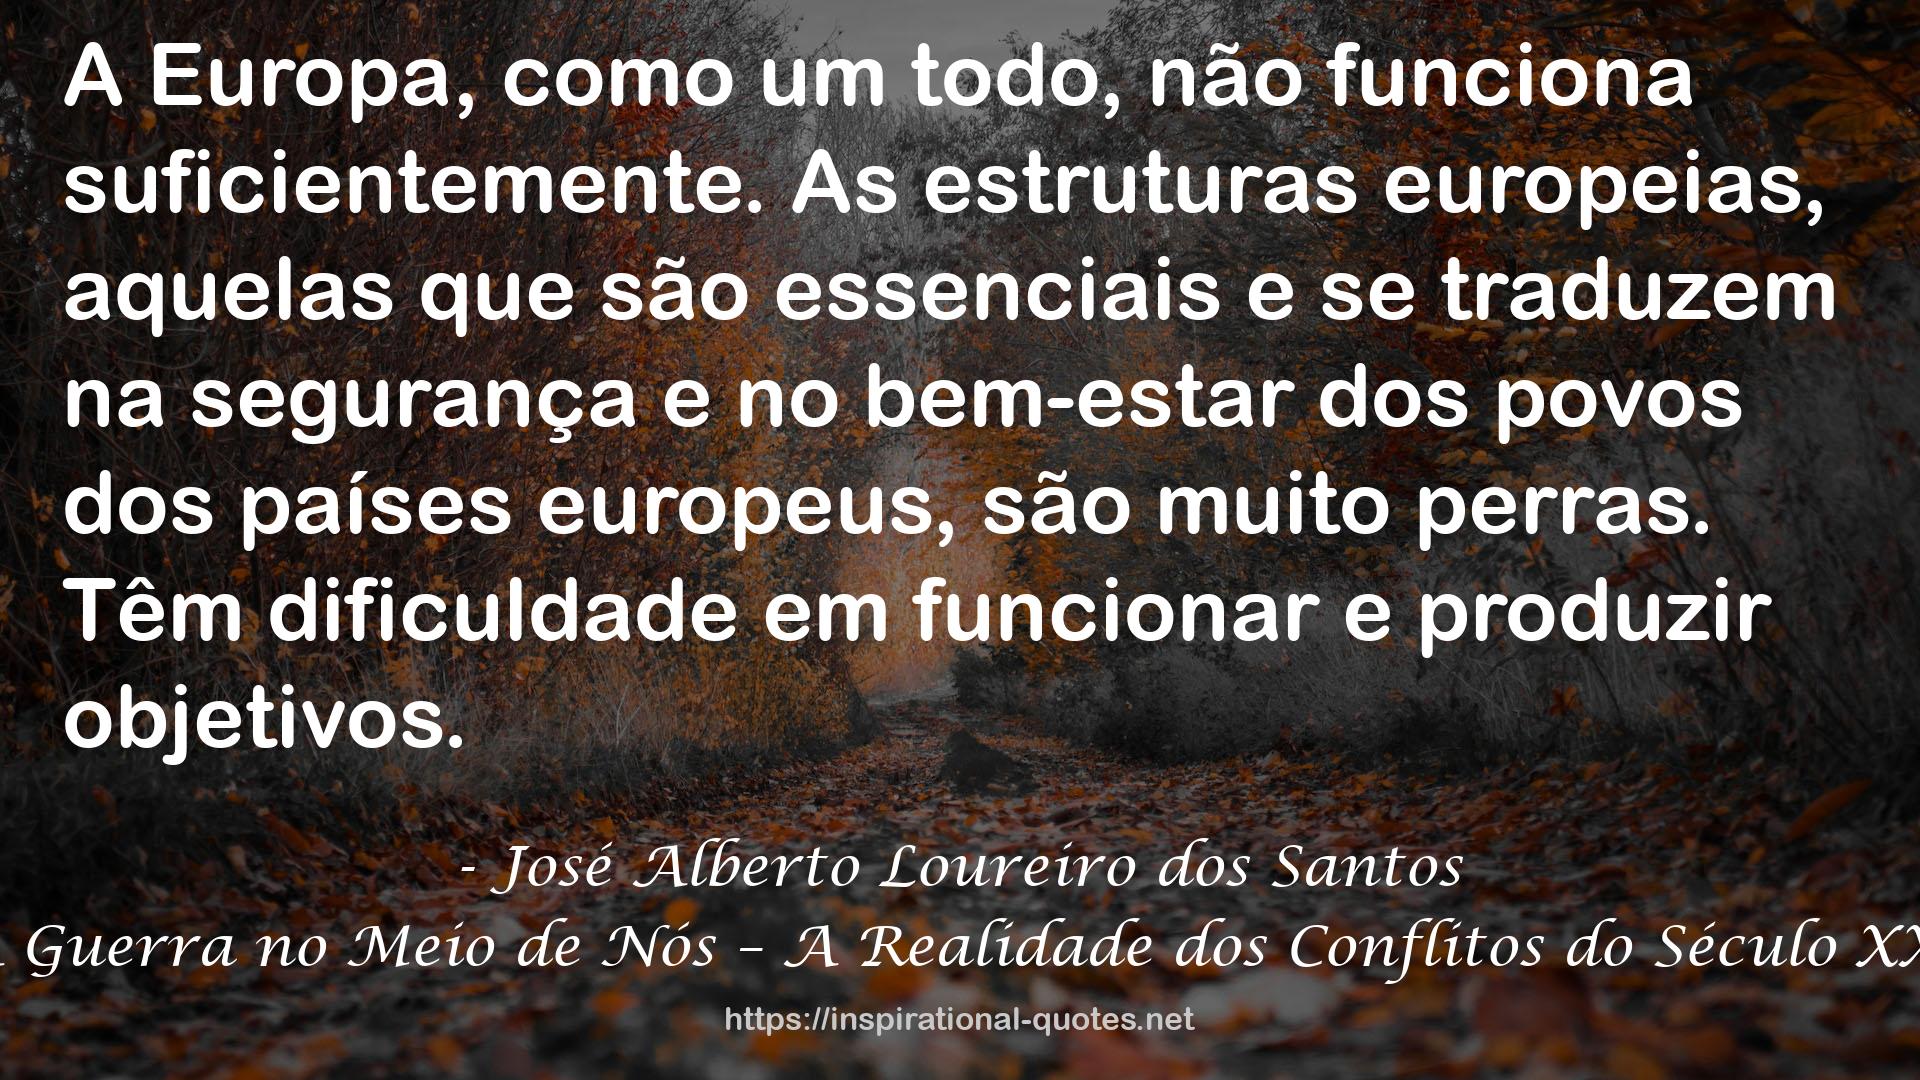 José Alberto Loureiro dos Santos QUOTES